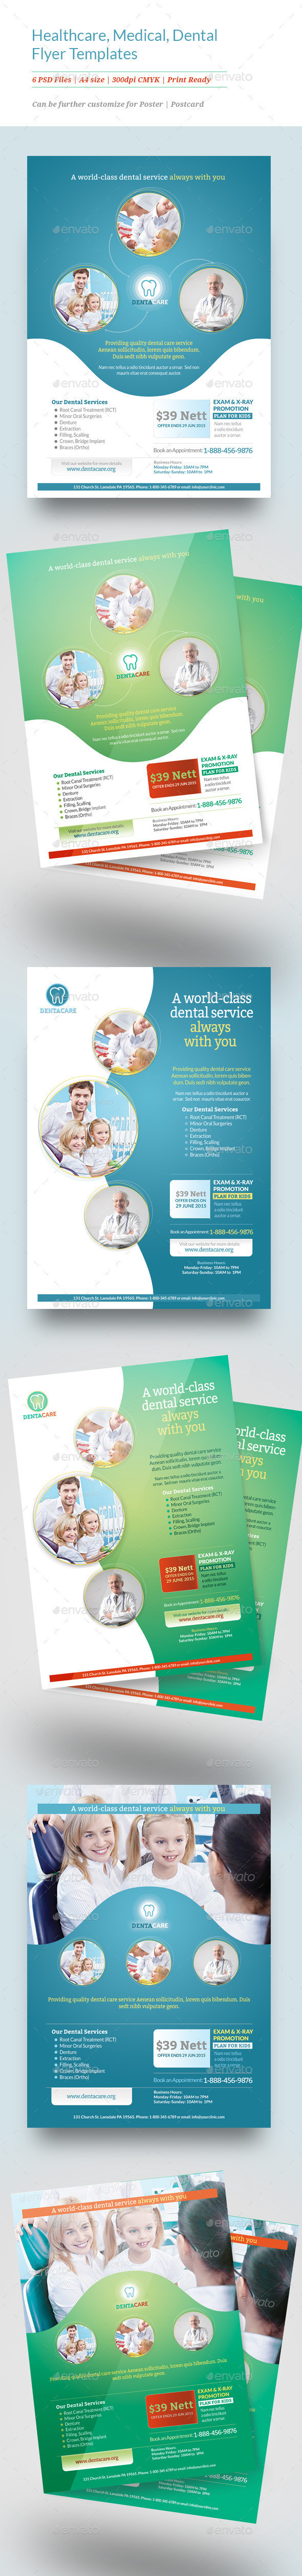 Preview healthcare medical dental flyer